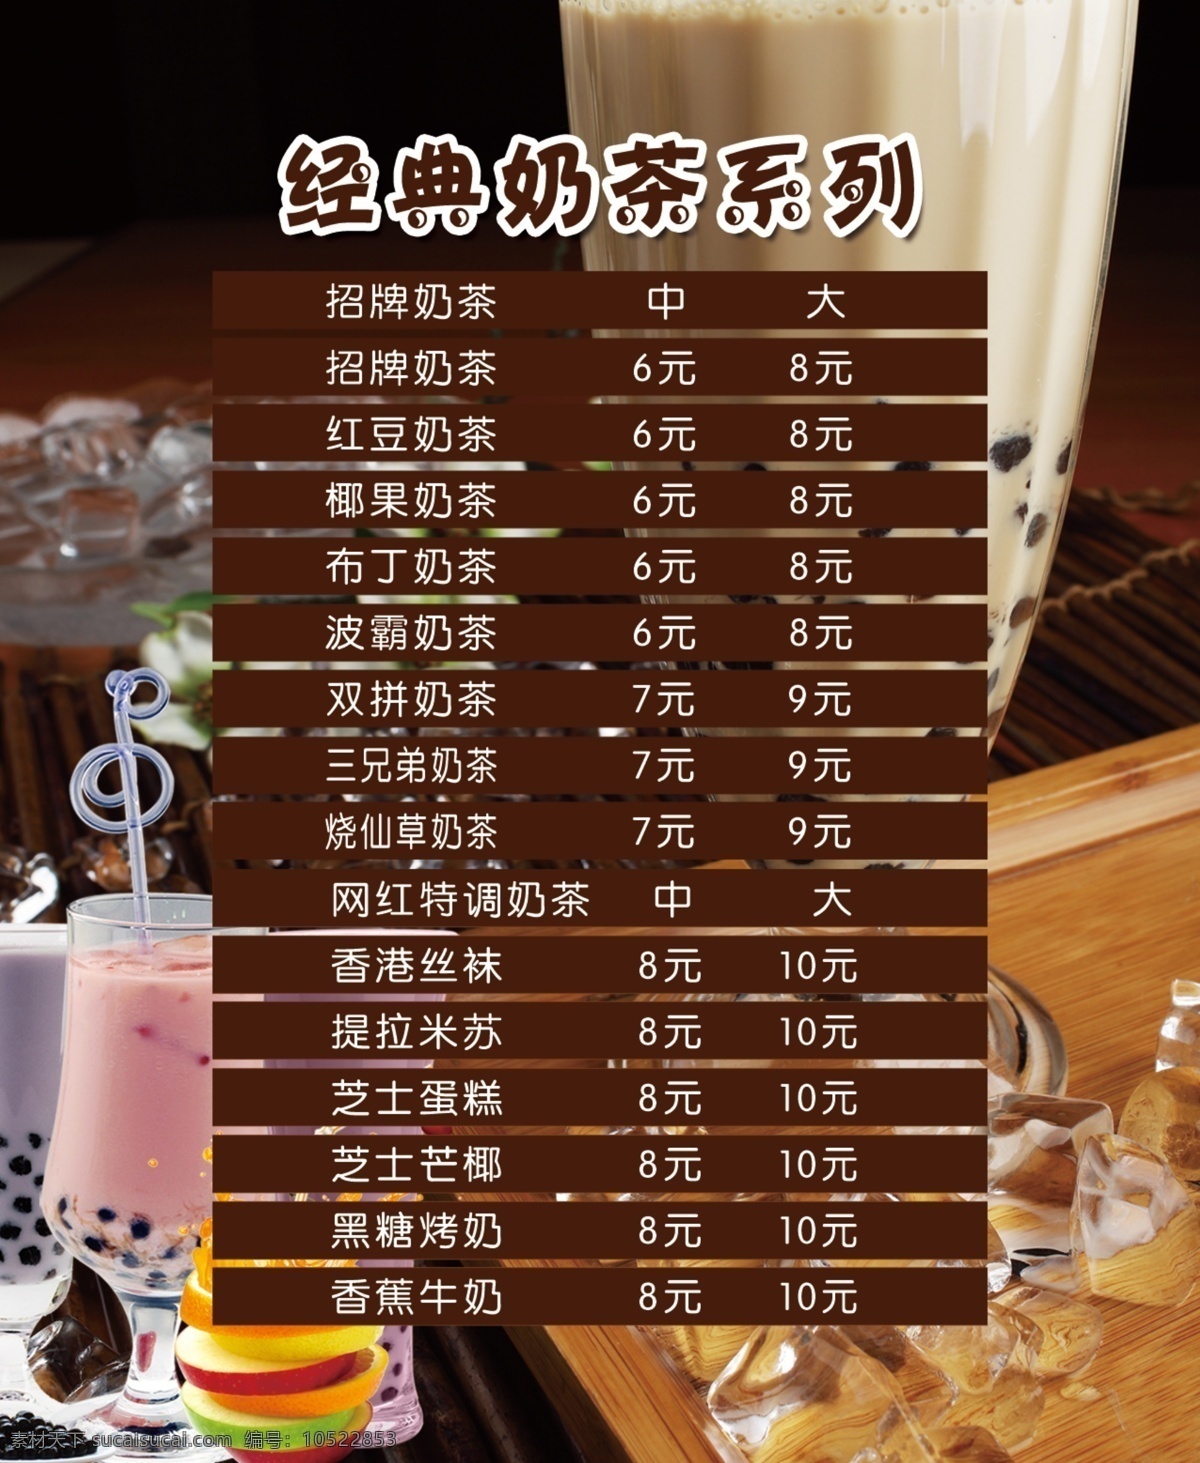 奶茶价目表 经典奶茶 灯片 珍珠奶茶 价目表 咖啡